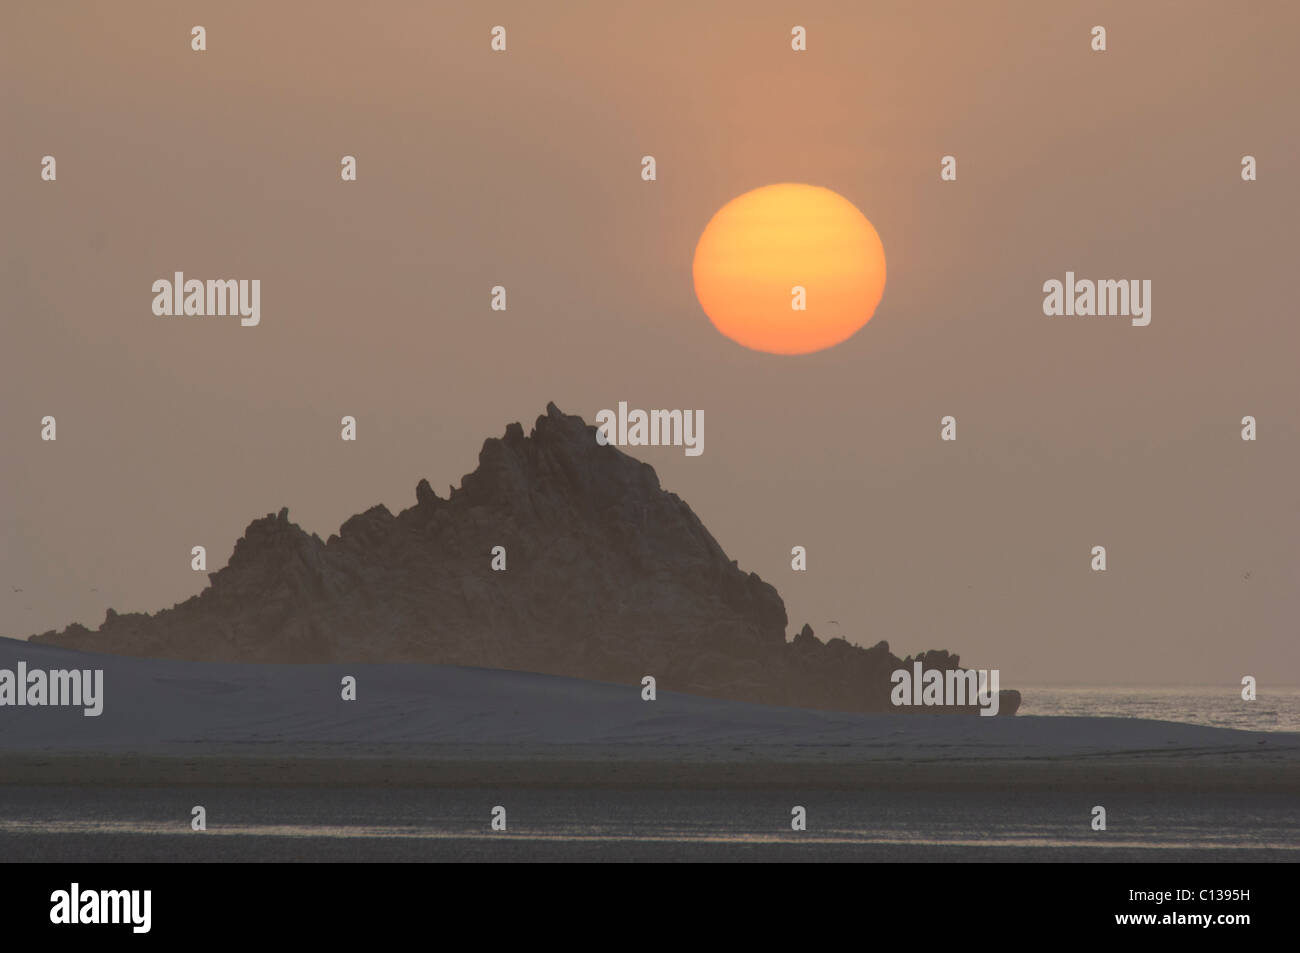 Sun setting behind a rock formation at Detwah lagoon near Qulansiyah, Socotra, Yemen Stock Photo